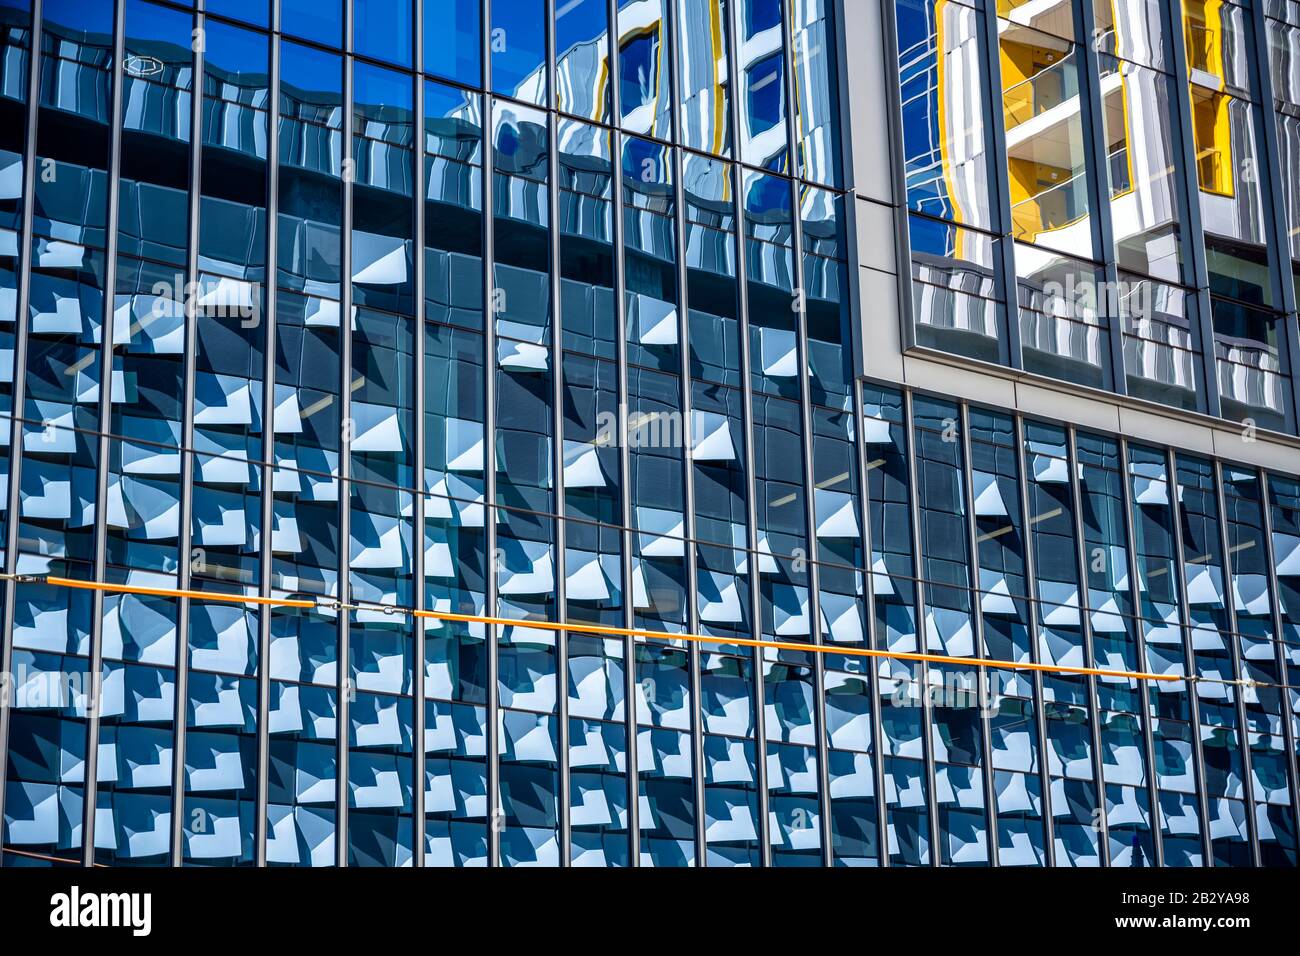 Reflektierende Elemente der modernen Stadtarchitektur dekorative abstrakte, fixierte Außenwände eines sonnenbeleuchteten mehrstöckigen Gebäudes, das in der for hergestellt wurde Stockfoto